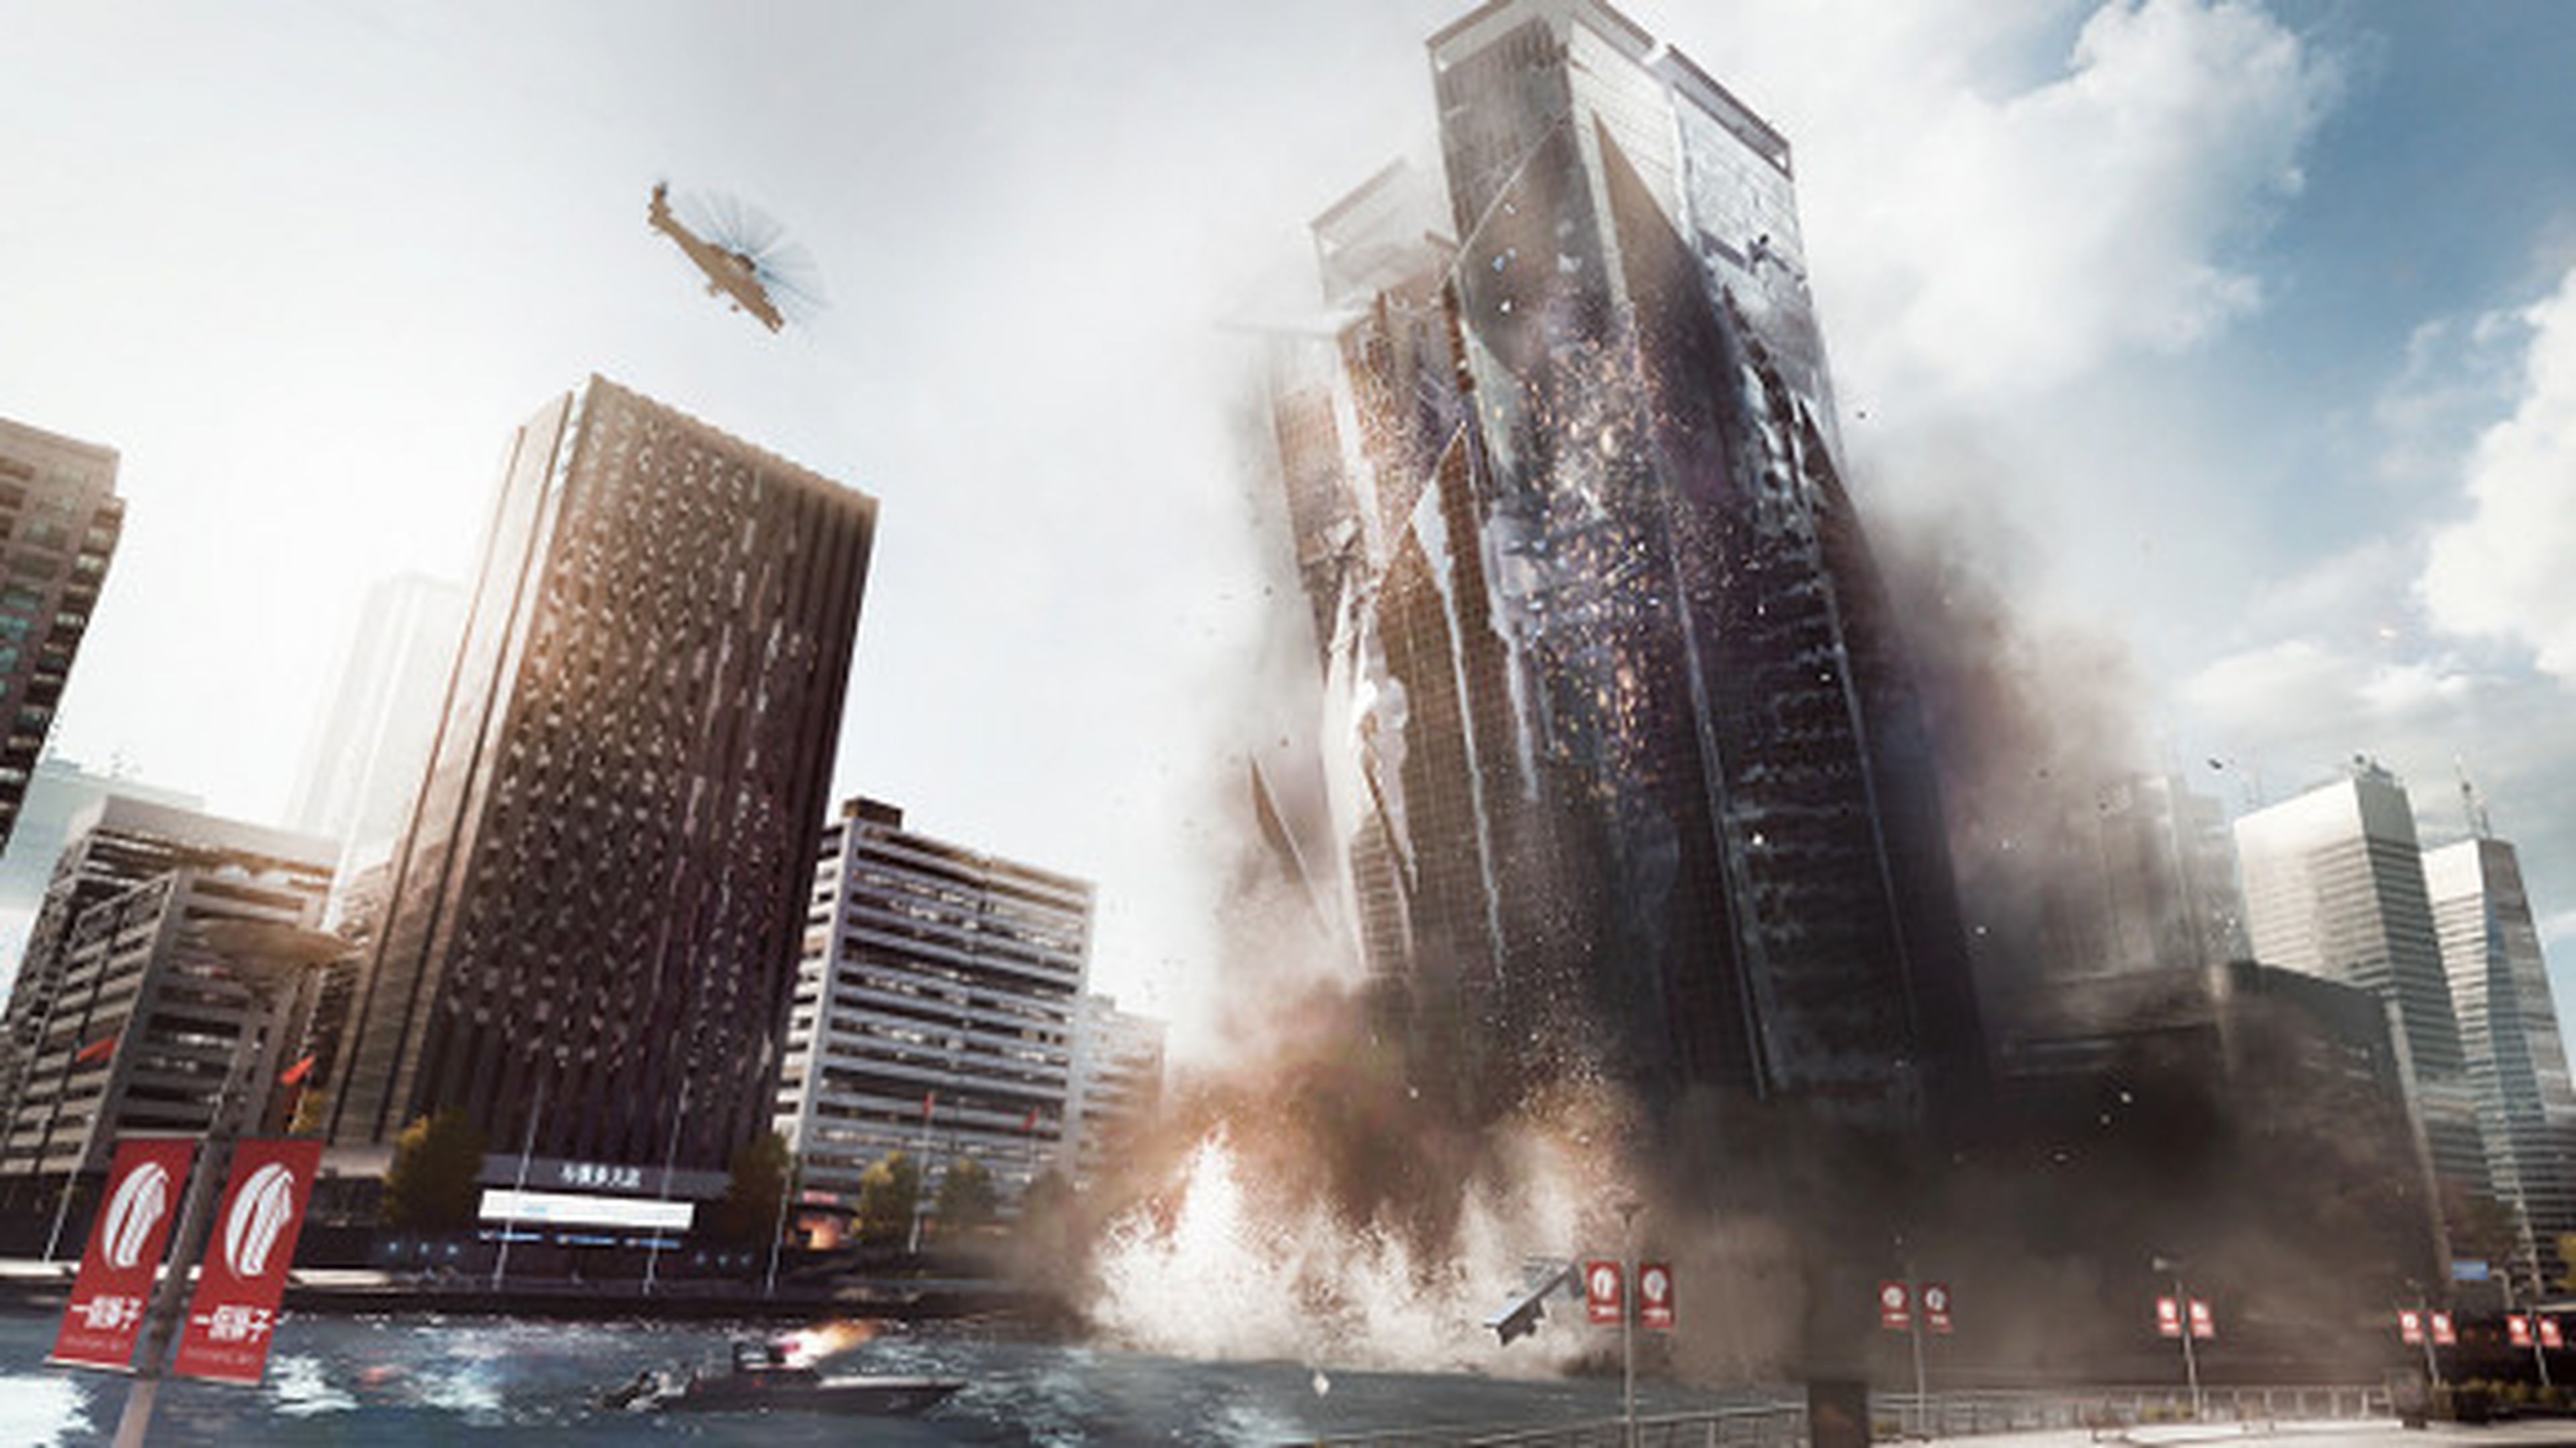 Análisis de Battlefield 4 en PS3 y Xbox 360